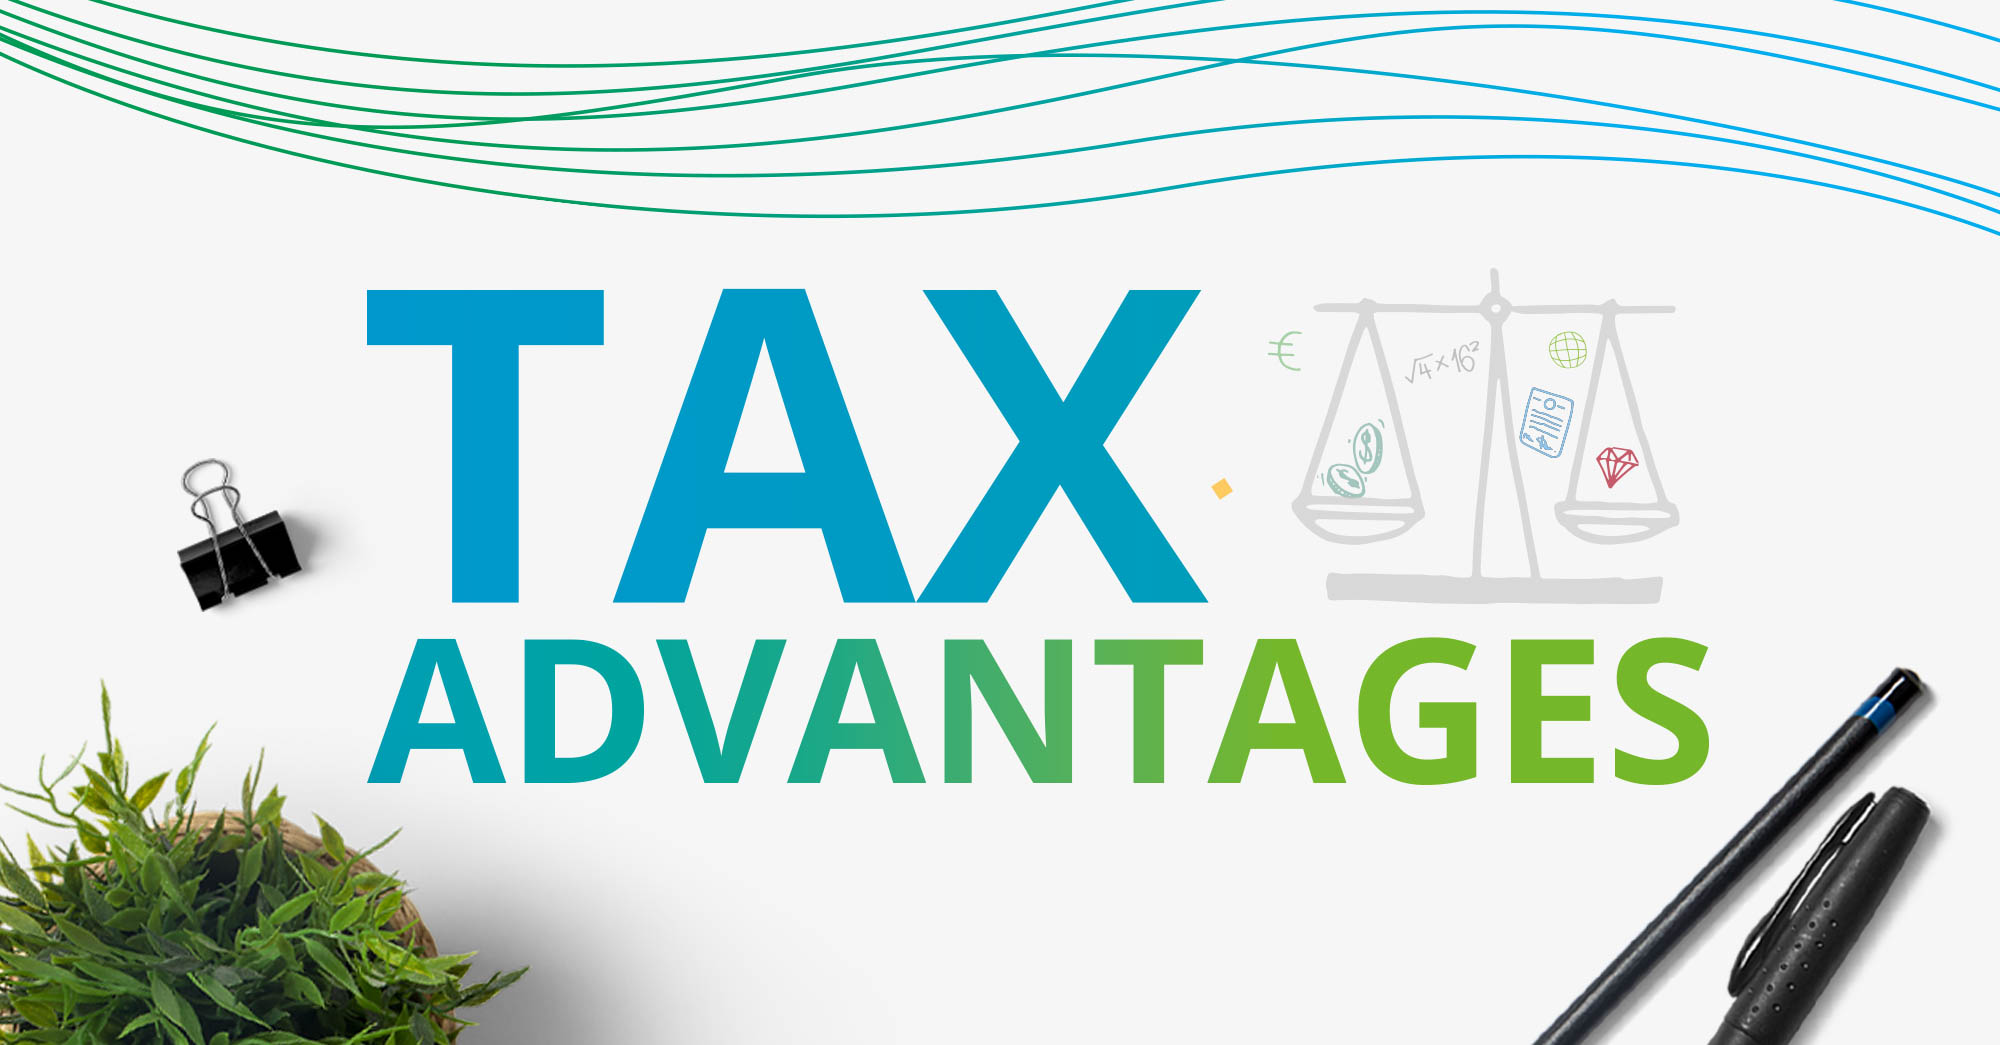 The Tax Advantages of an Enterprise Management Incentive (EMI)